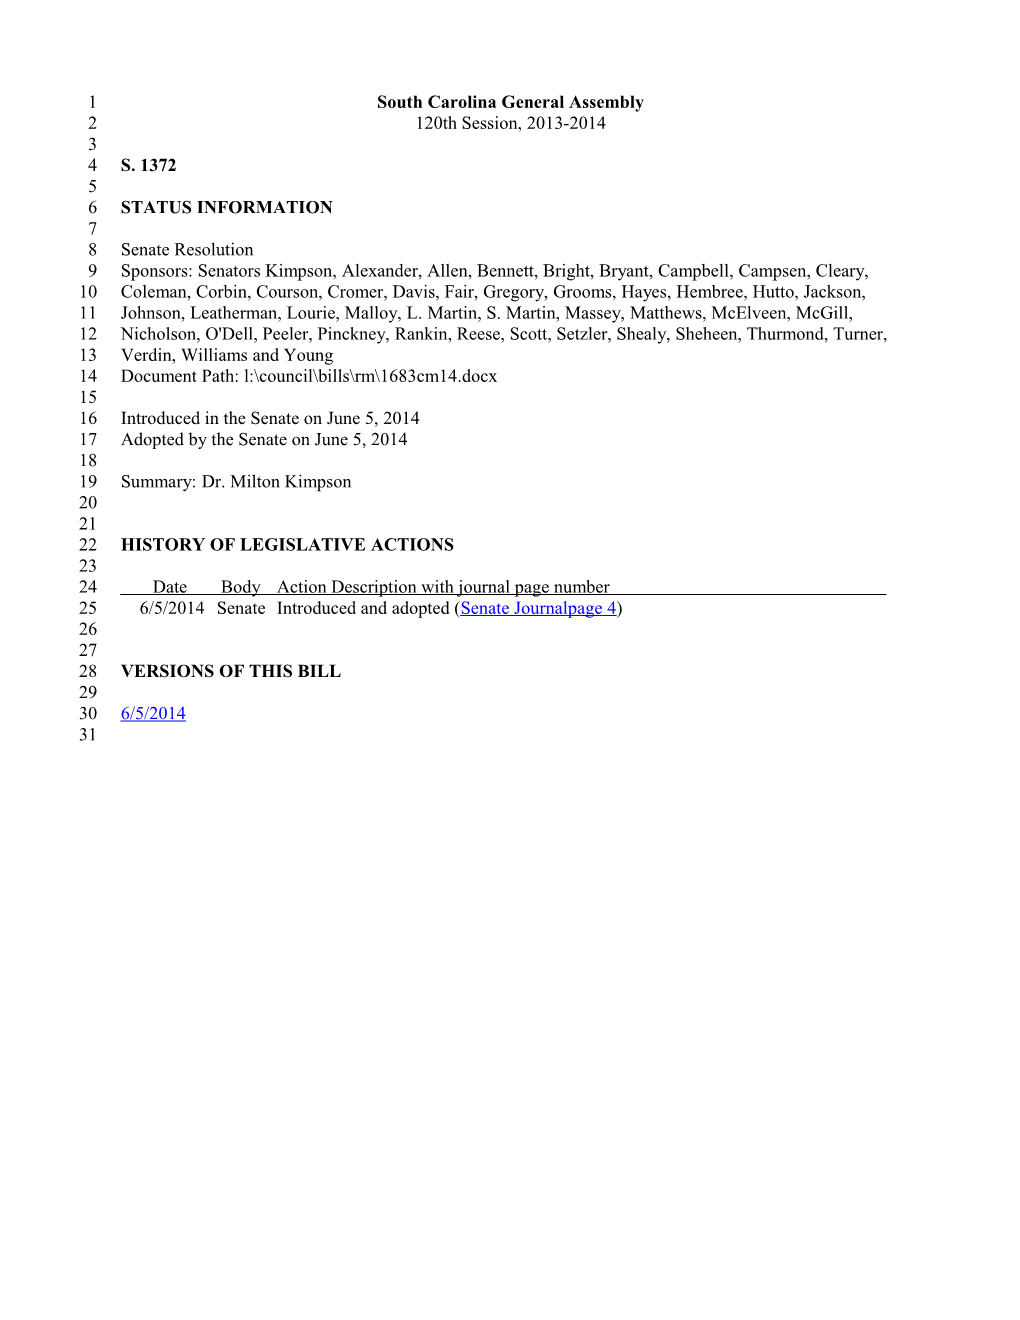 2013-2014 Bill 1372: Dr. Milton Kimpson - South Carolina Legislature Online